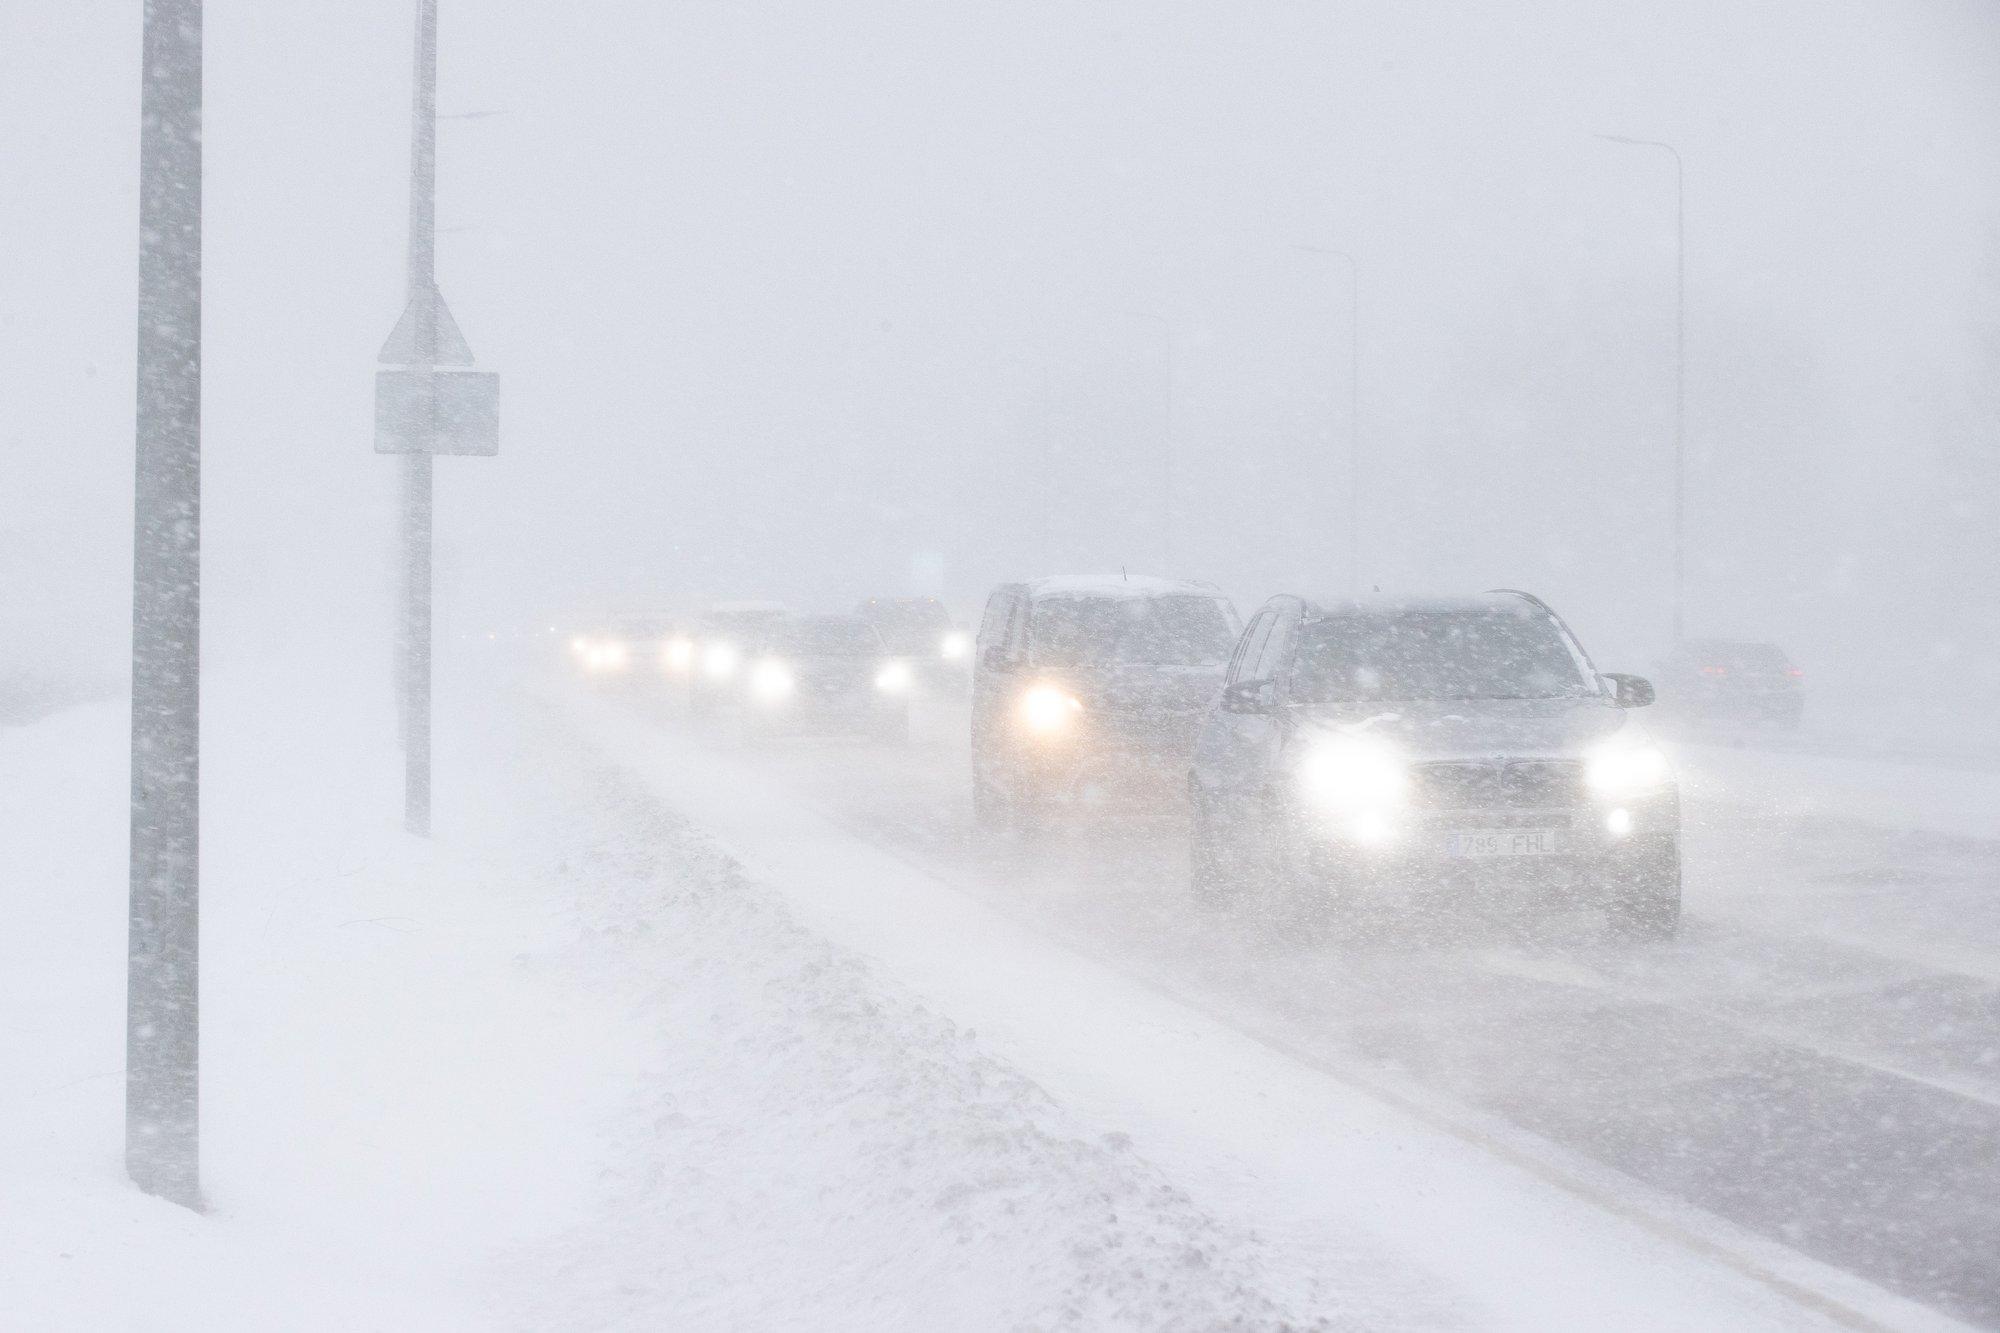 ПРОГНОЗ ПОГОДЫ | Осторожно! Дорожная ситуация усложнится из-за сильного мокрого снега